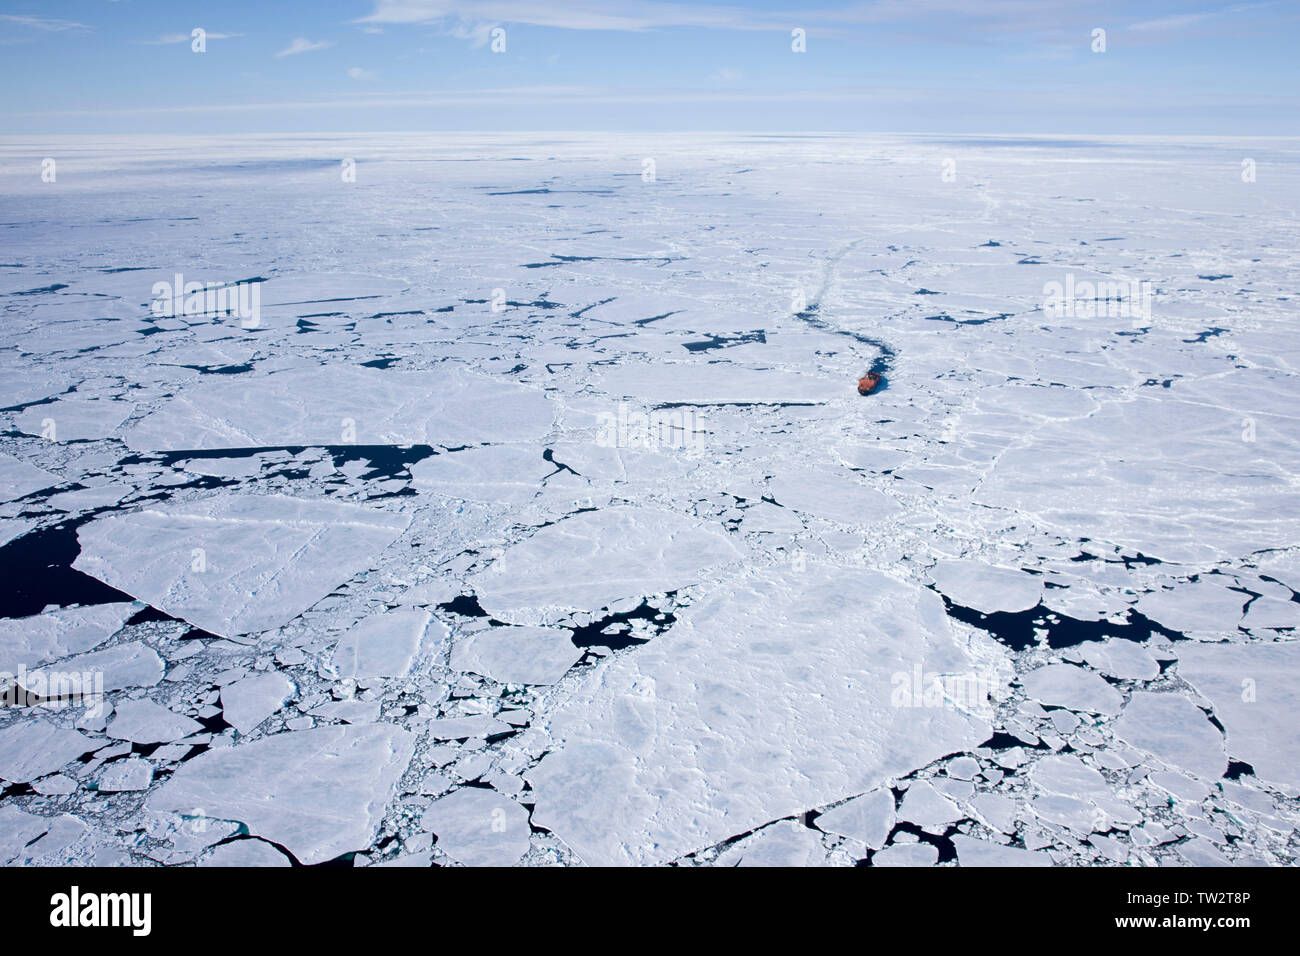 El rompehielos nuclear más grande del mundo, de 50 años de Victoria, en la ruta hacia el Polo Norte. Artico ruso. Foto de stock